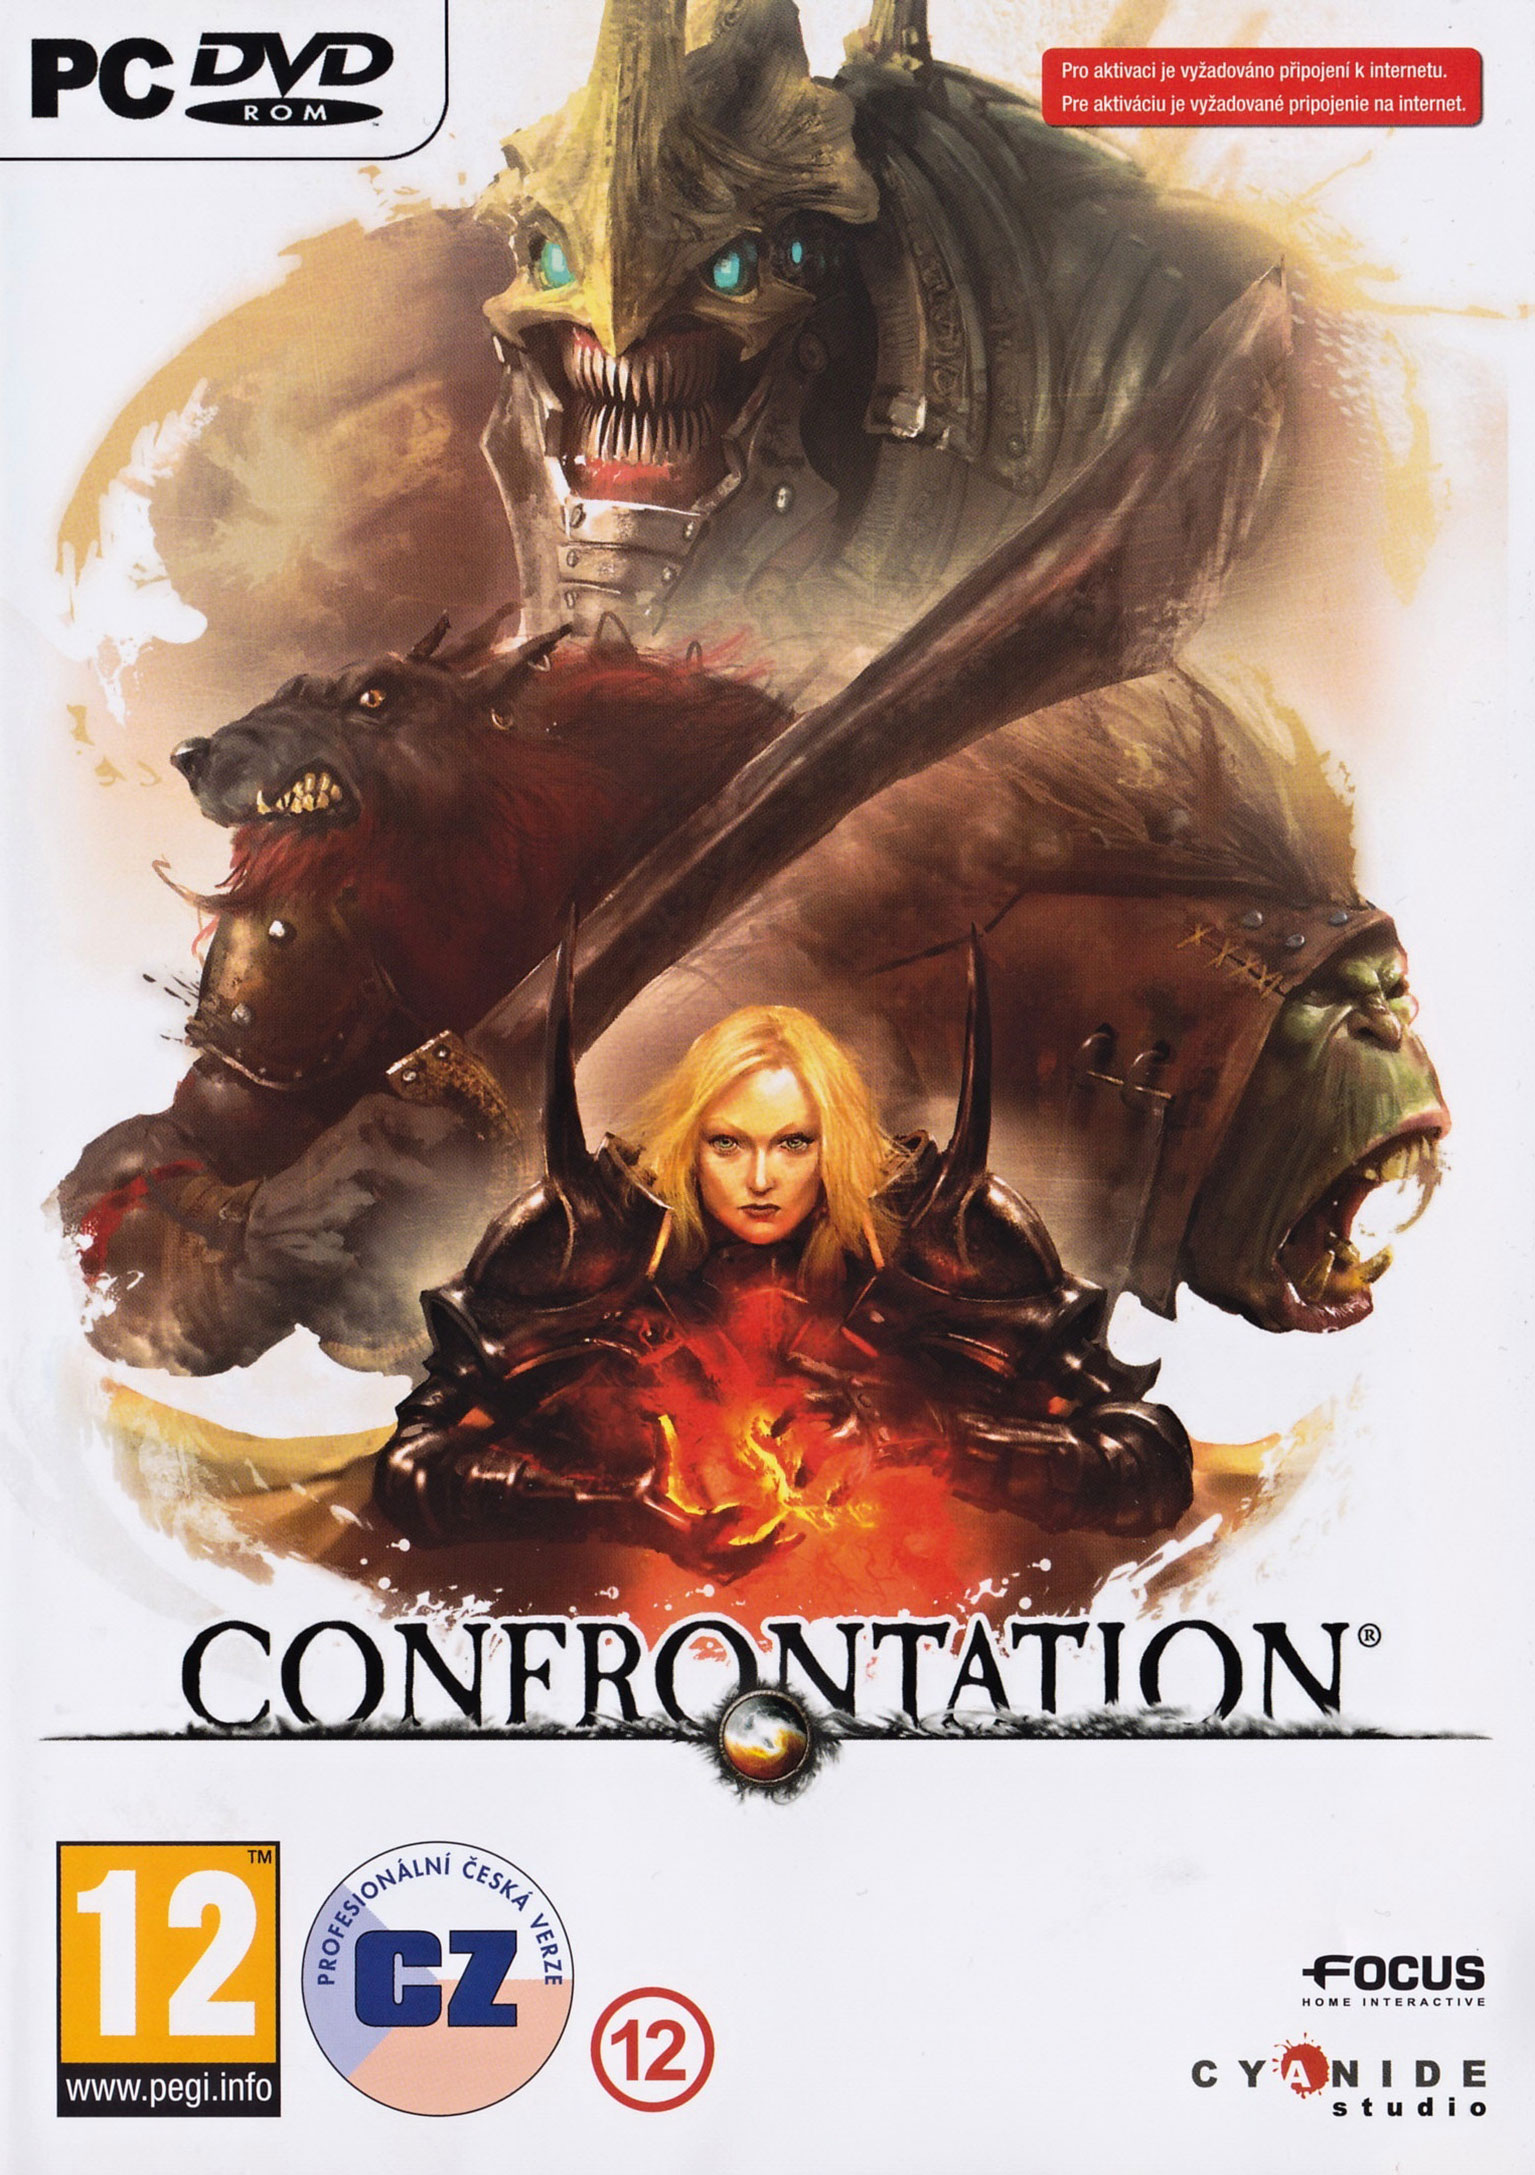 Confrontation - pedn DVD obal